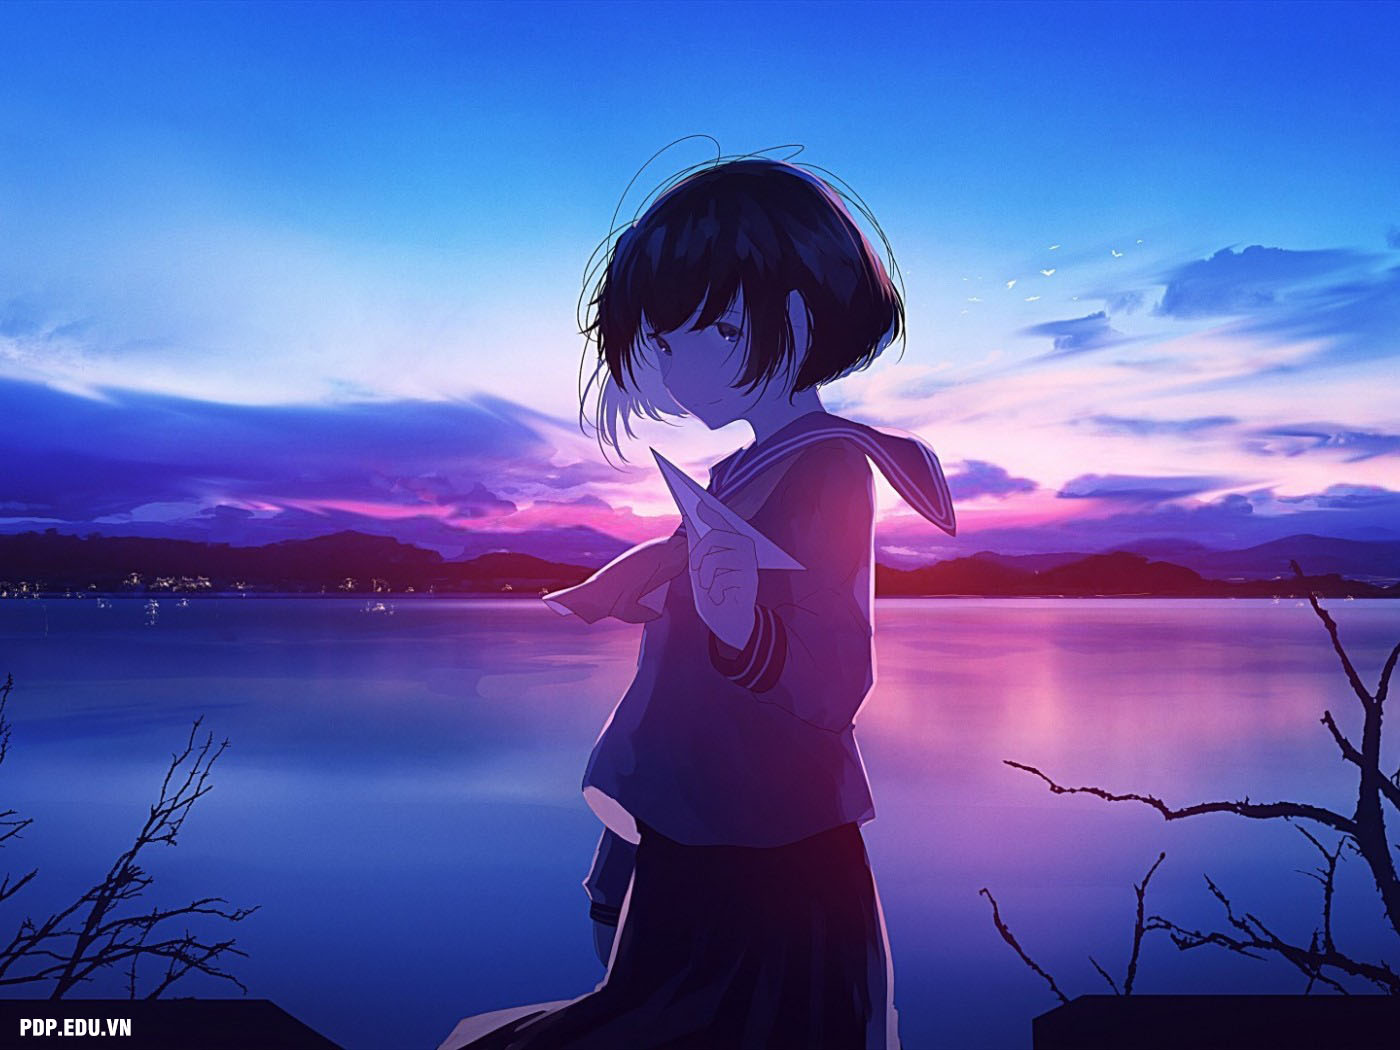 Hình ảnh anime cô đơn, buồn đầy tâm trạng đẹp nhất - Trung Tâm Đào ...